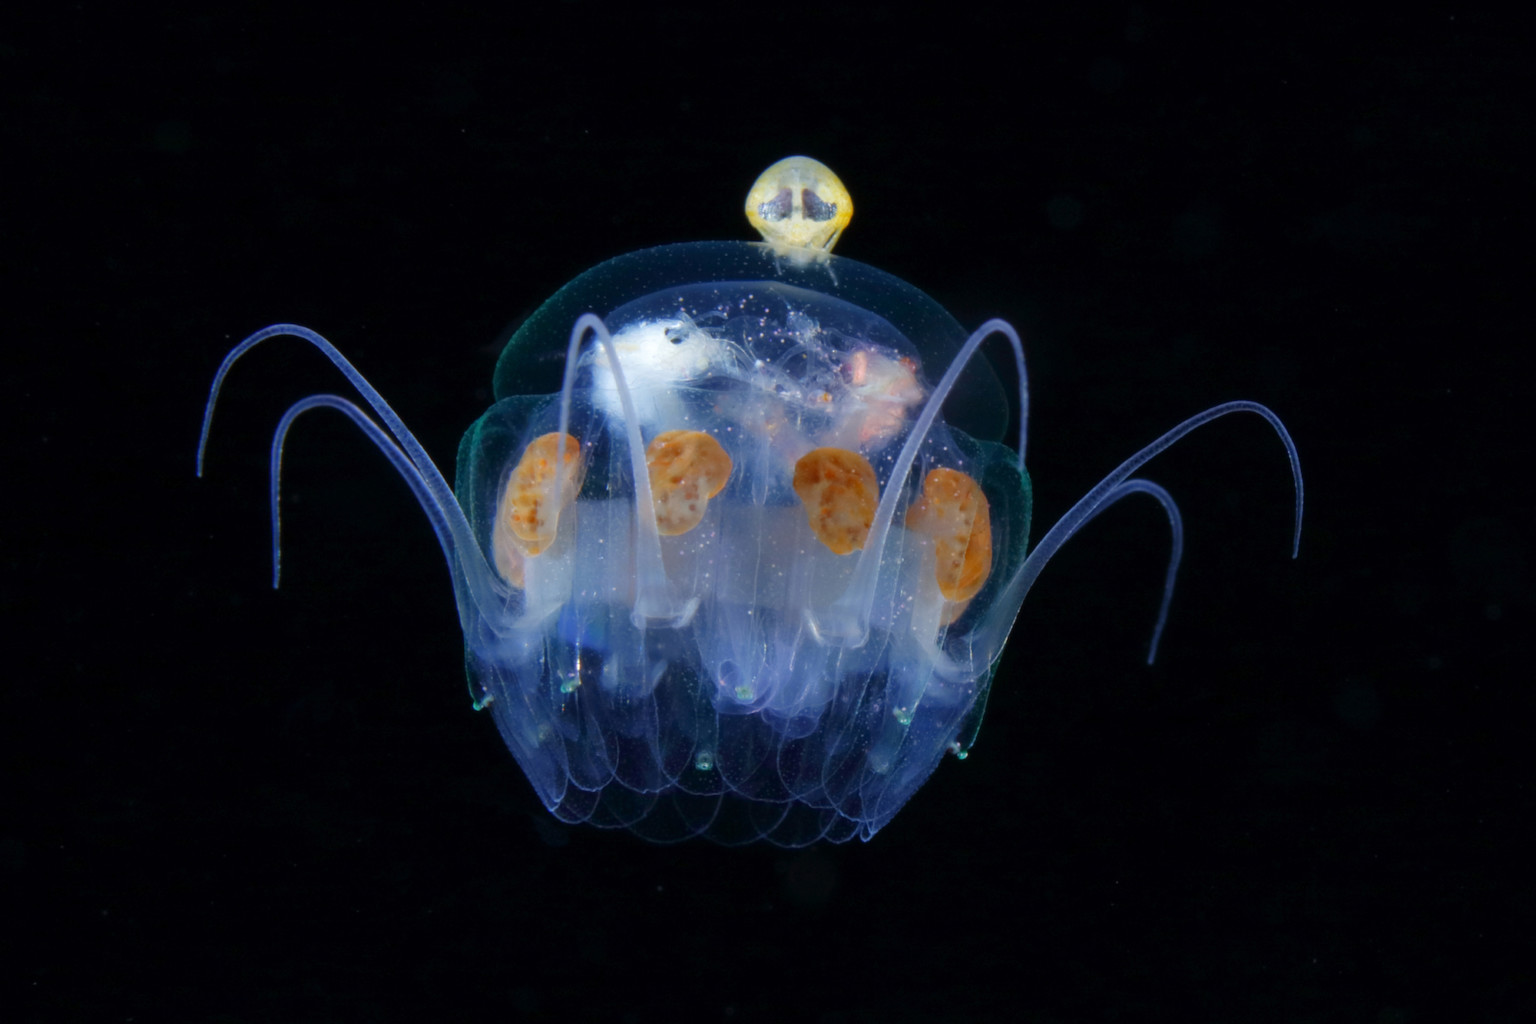 Hyperiidea on Nausithoe jellyfish